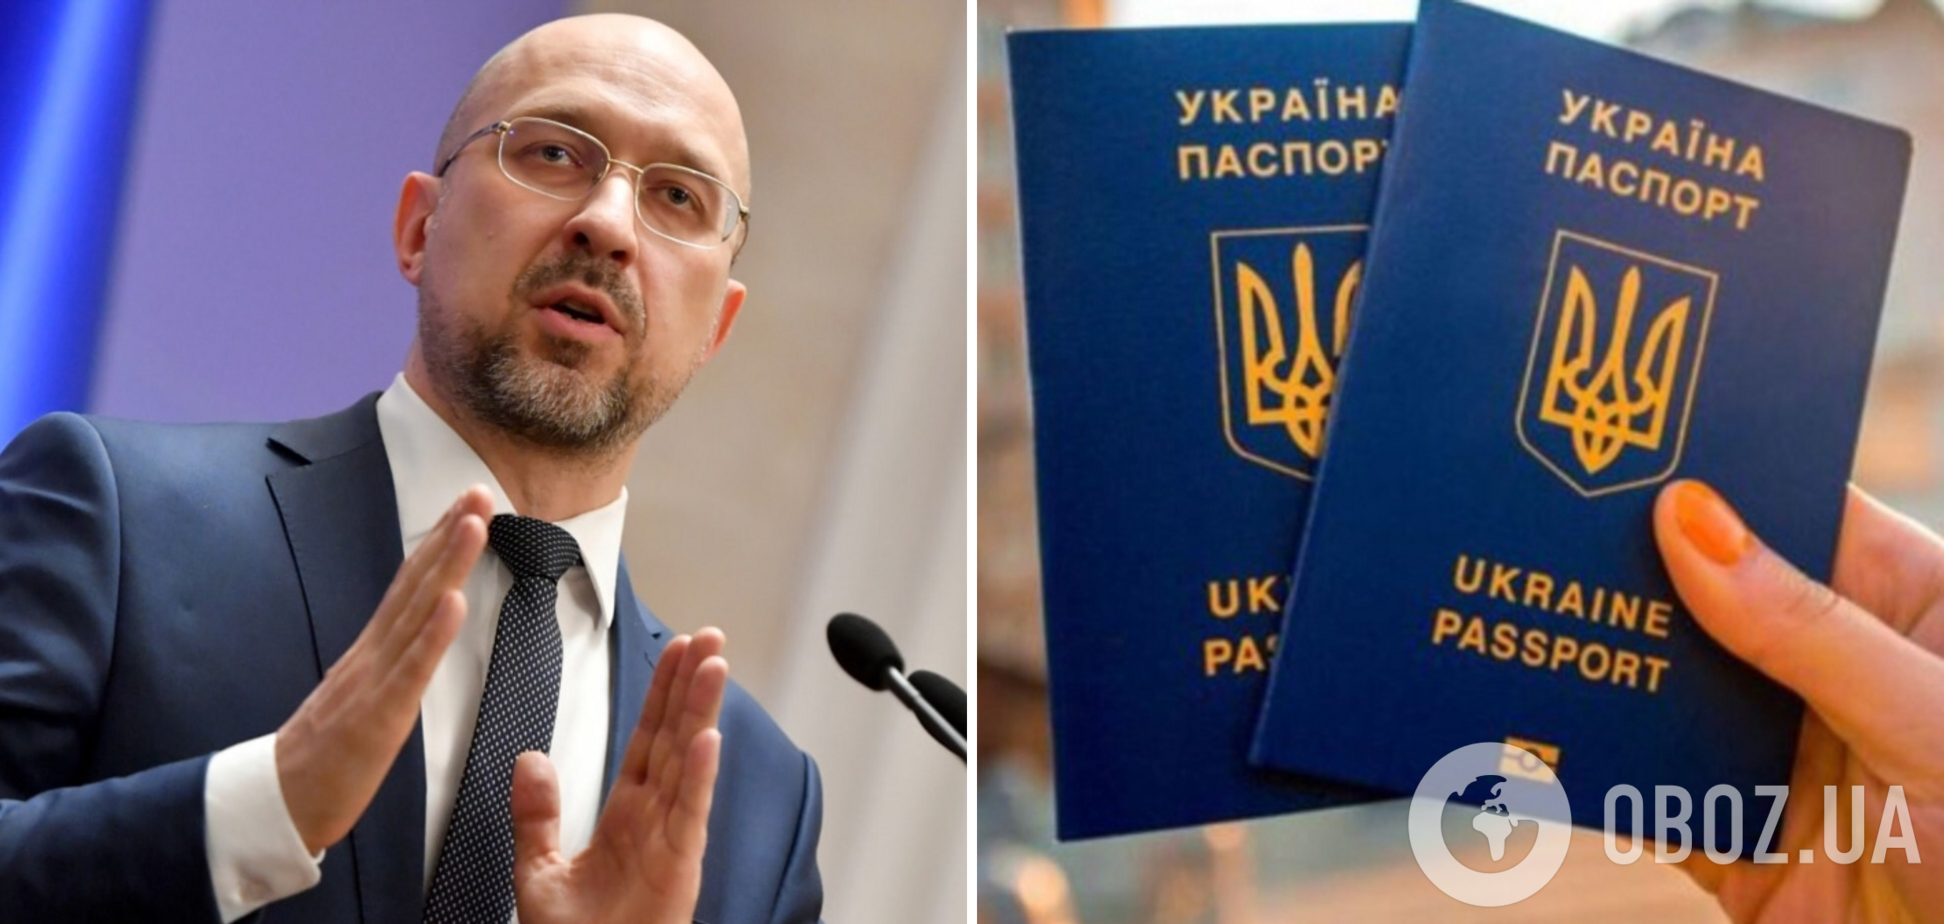 Кабмін готує законопроєкти про запровадження комплексного іспиту для охочих отримати громадянство України